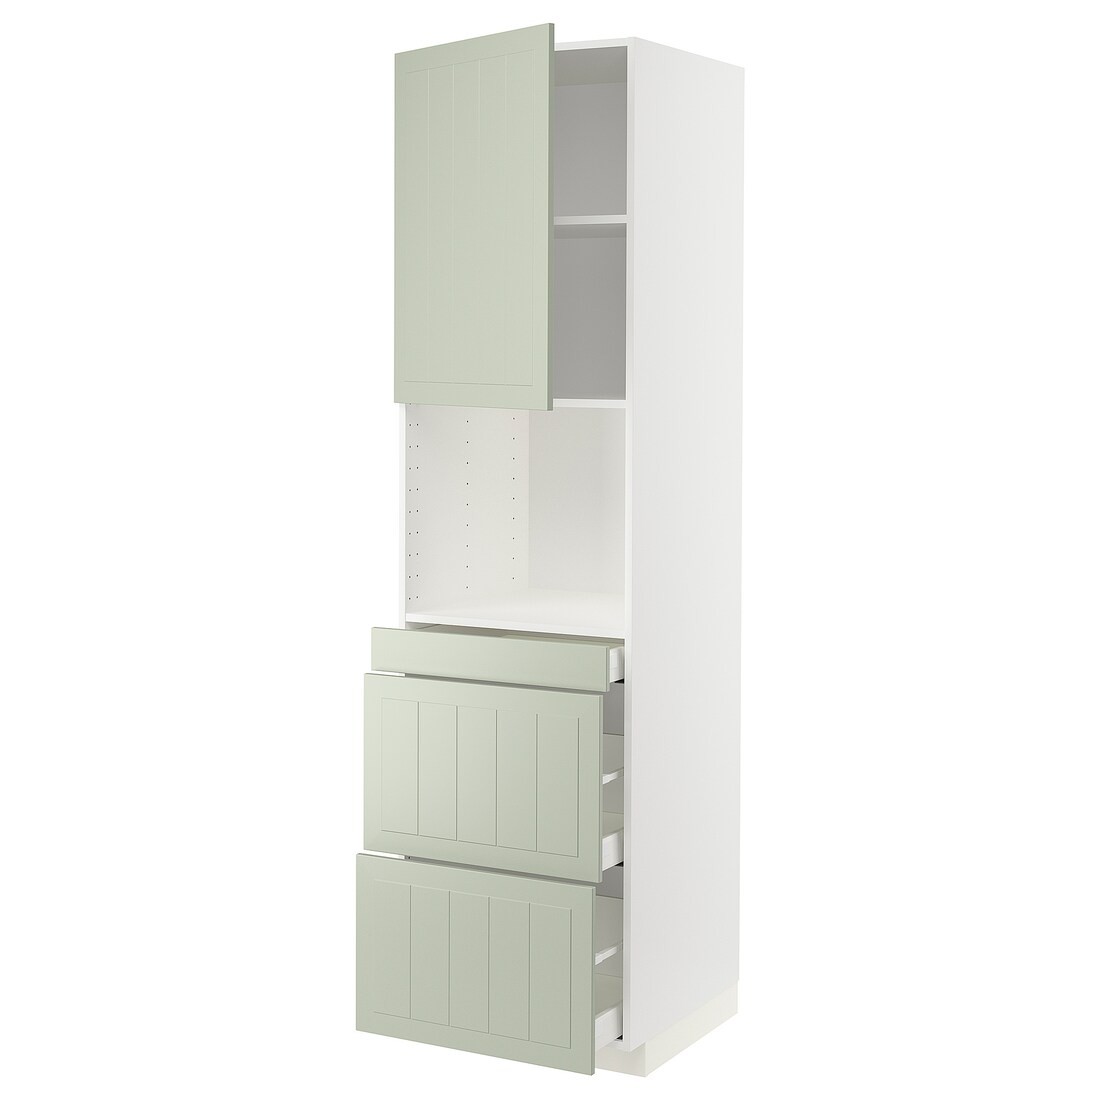 METOD МЕТОД / MAXIMERA МАКСИМЕРА Высокий шкаф для СВЧ / дверца / 3 ящика, белый / Stensund светло-зеленый, 60x60x220 см